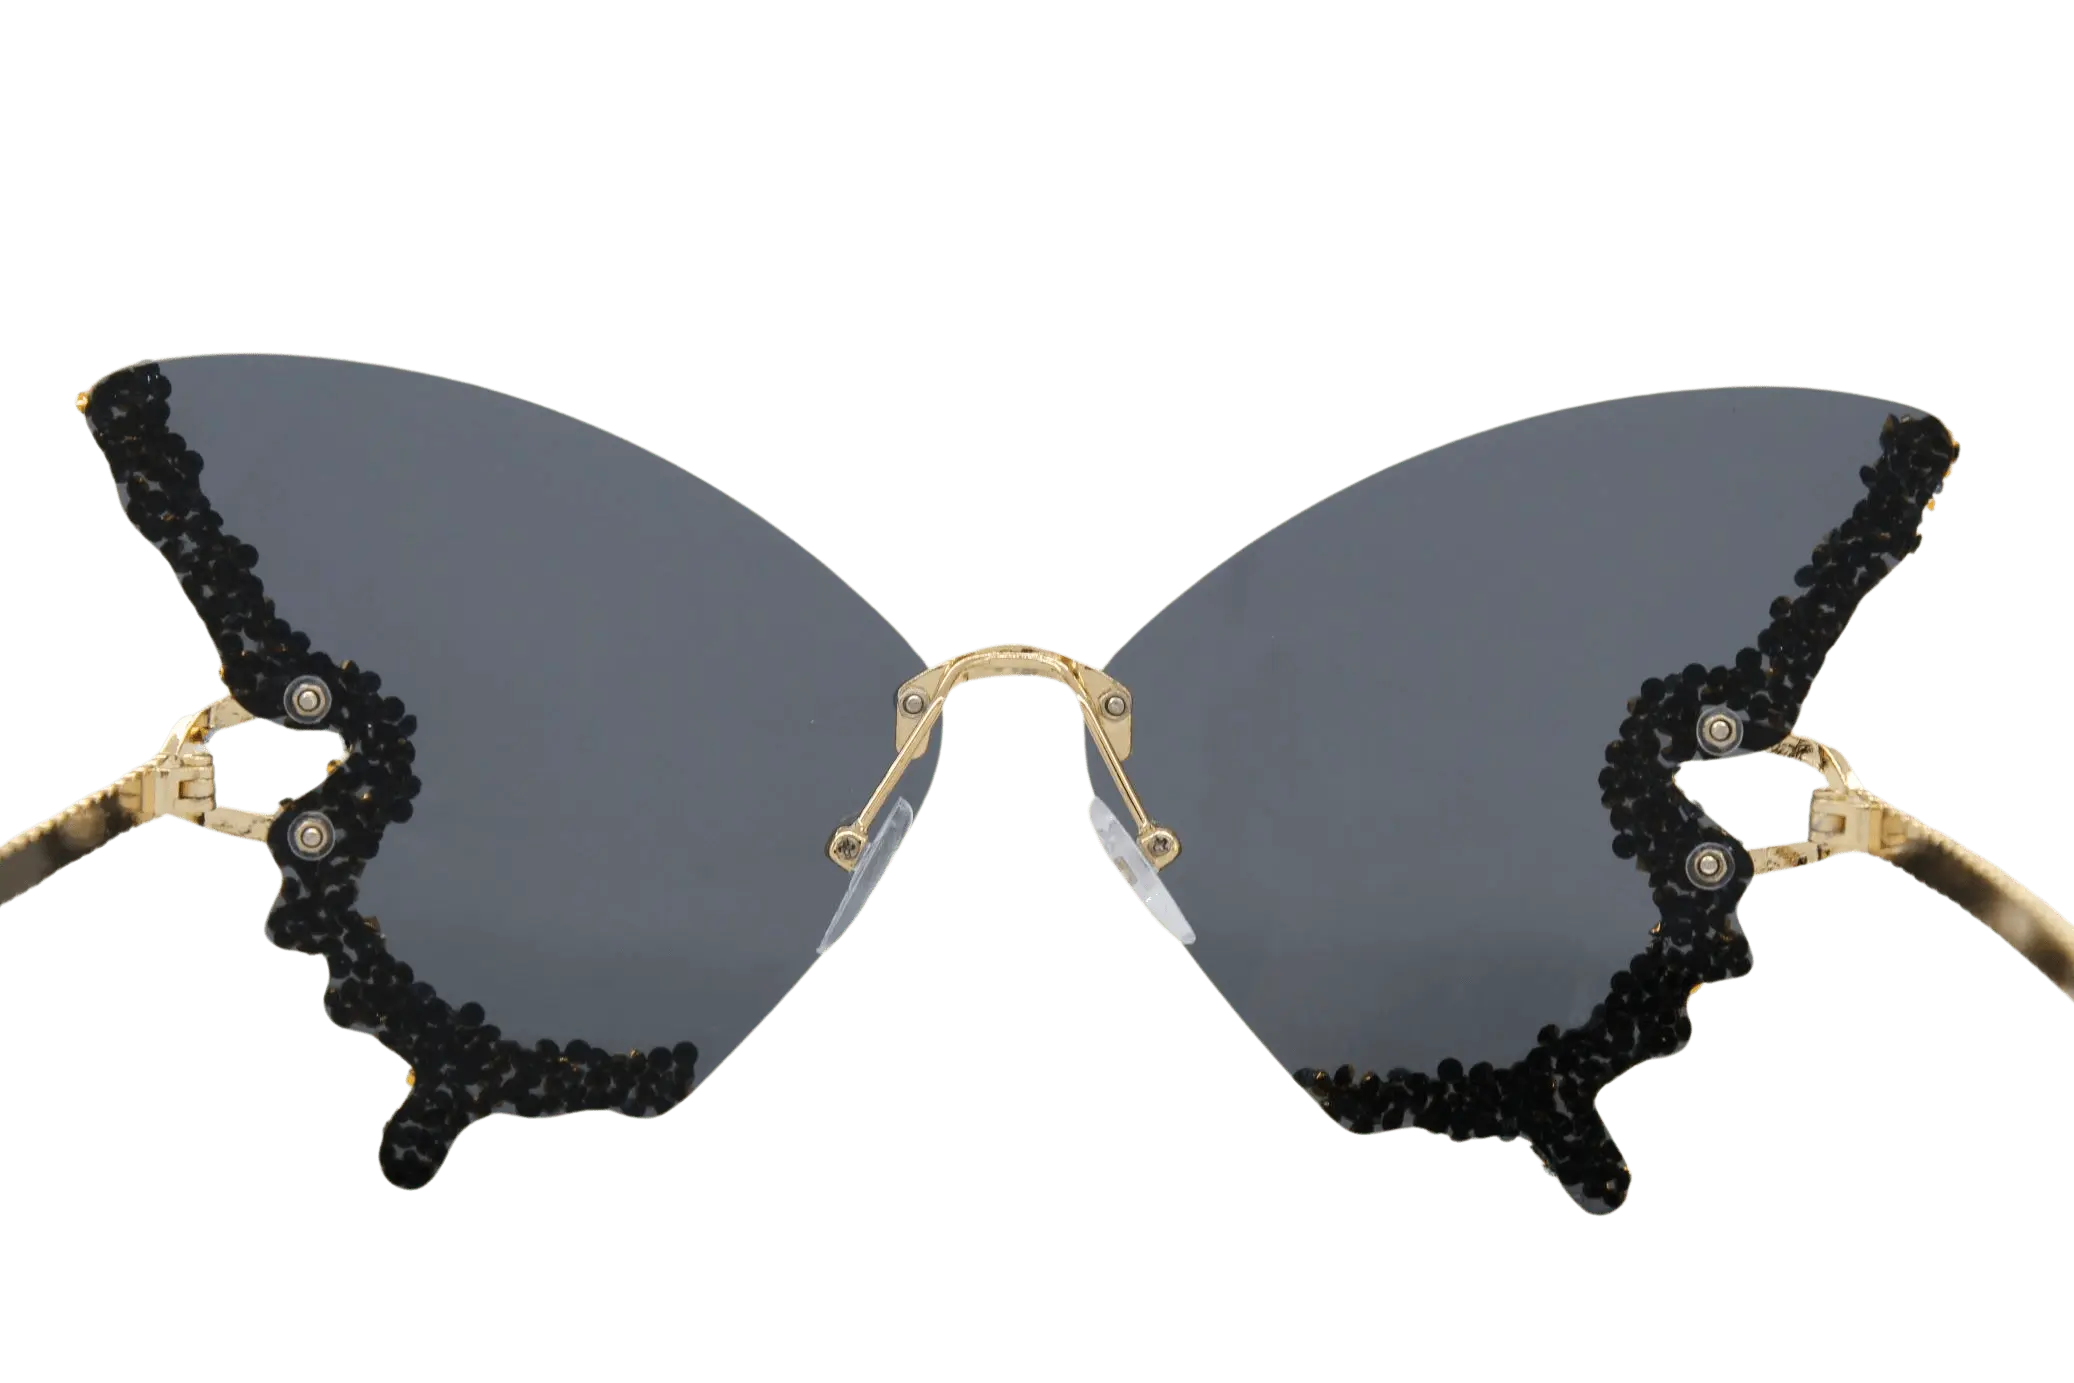 Faltertanz Schmetterling Brille